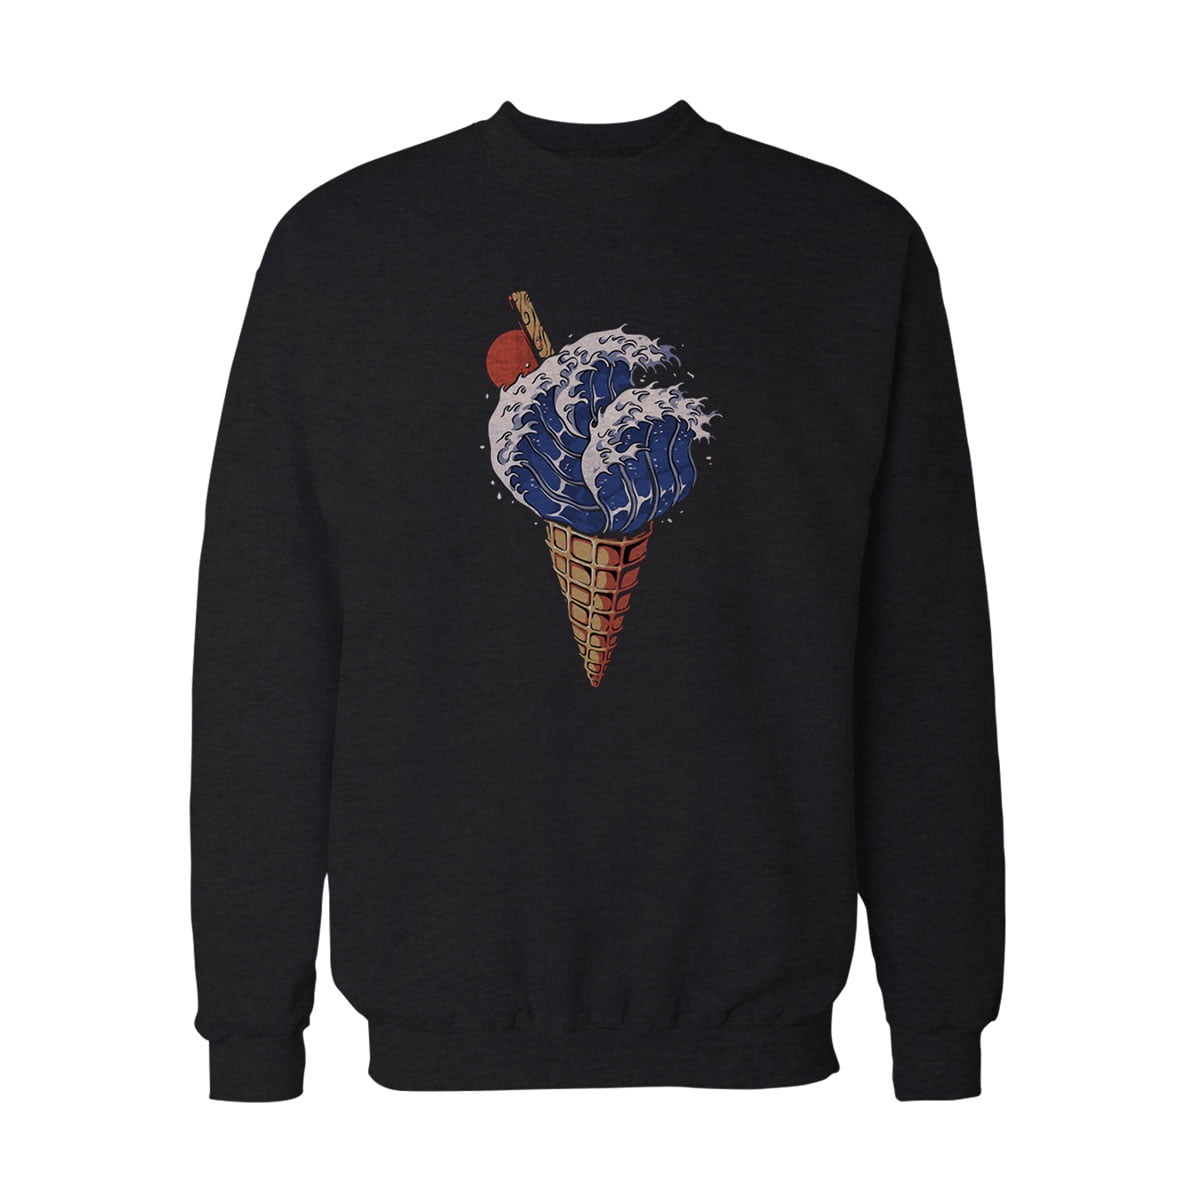 Dondurma Ice Cream No2 Sweatshirt S